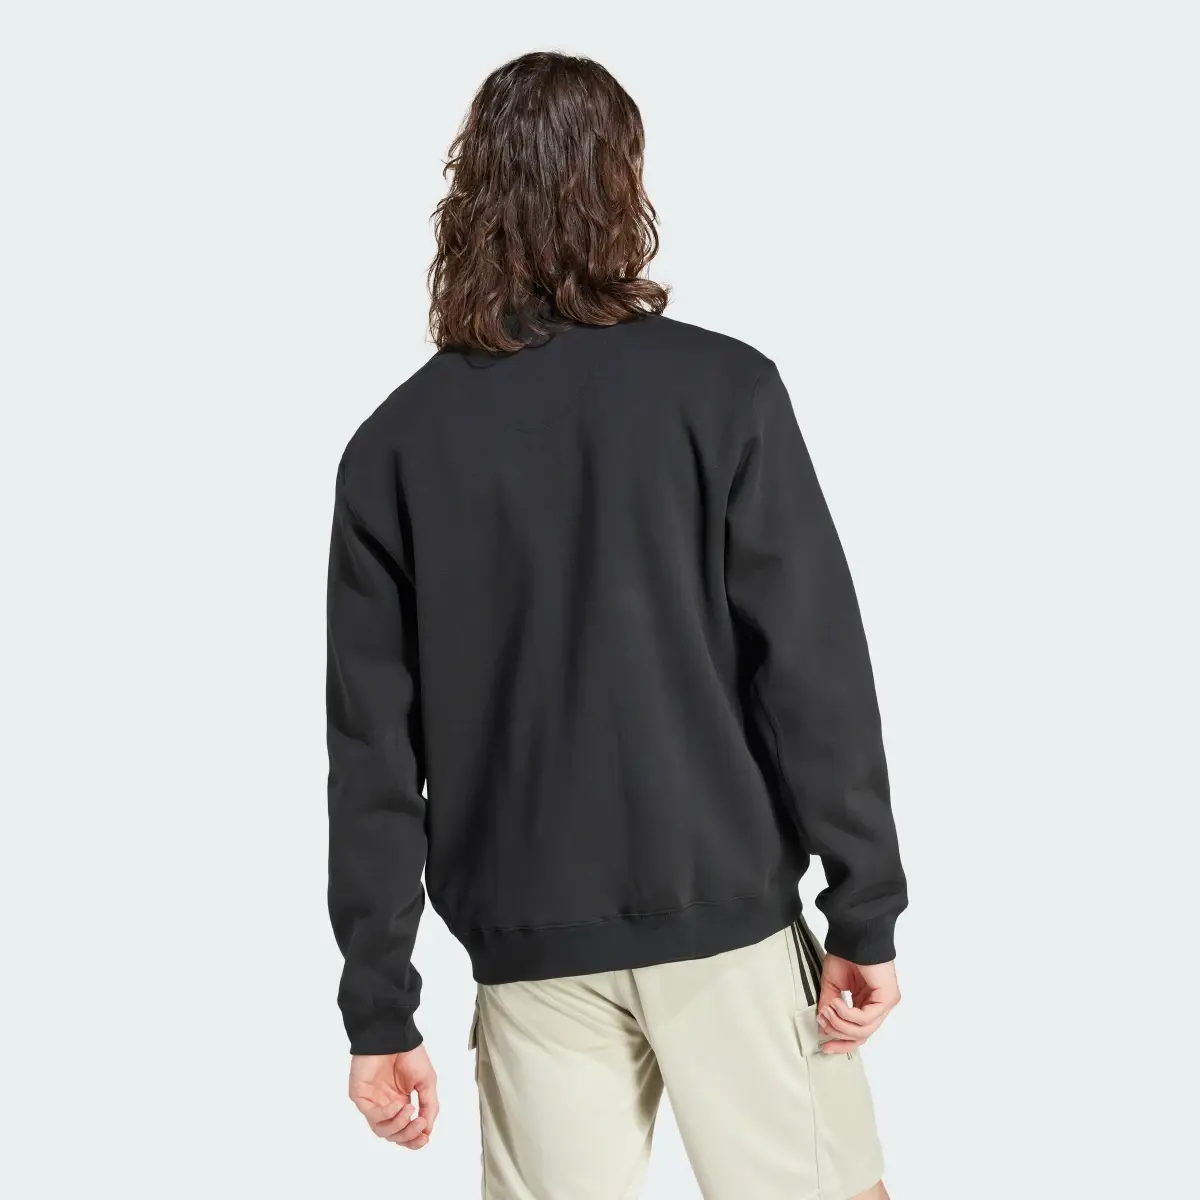 Adidas Lounge Fleece Bomber Jacket With Zip Opening. 3